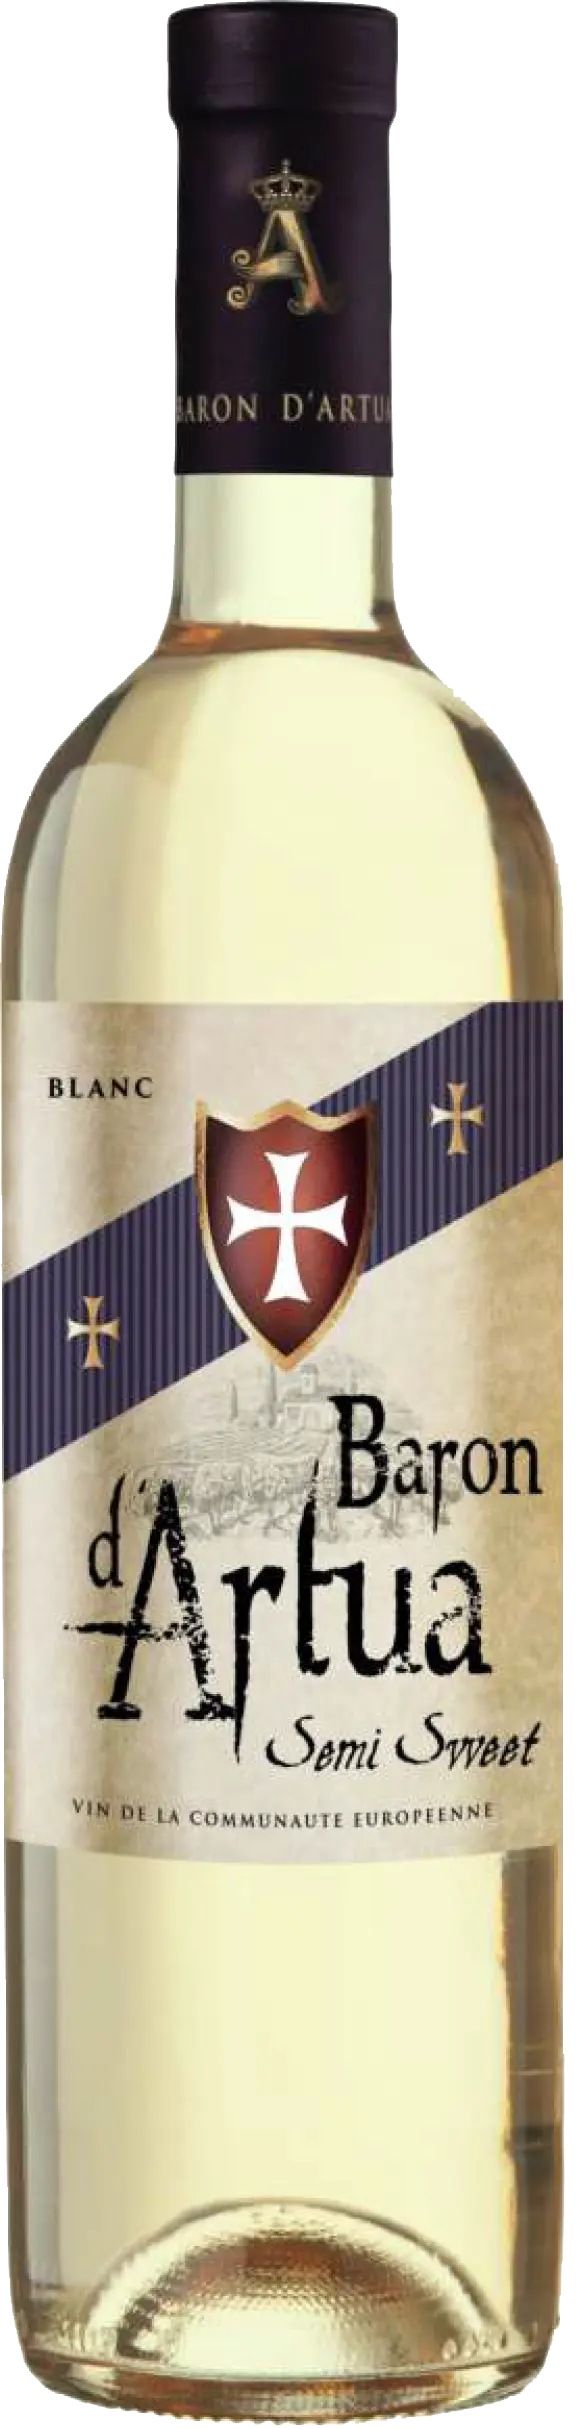 Вино Барон д'Артуа белое полусладкое